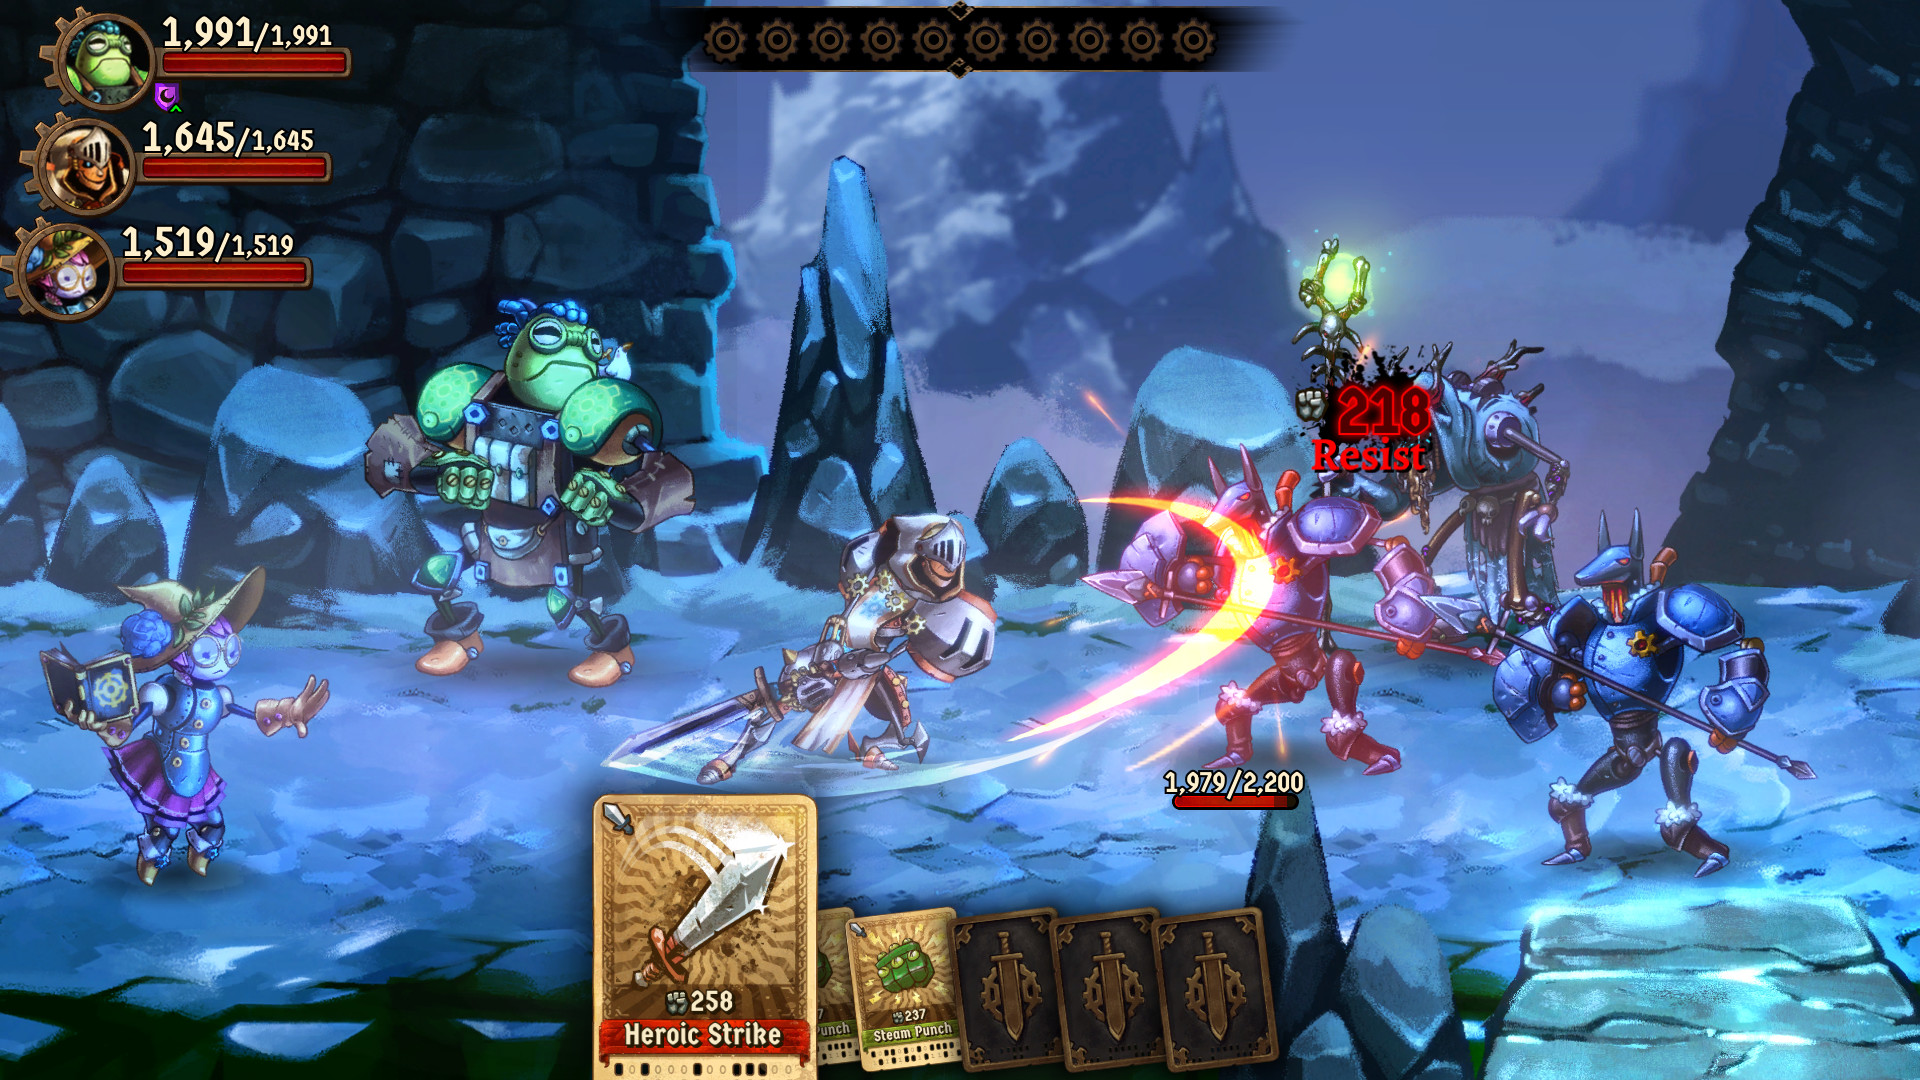 SteamWorld Quest: Hand of Gilgamech screenshot